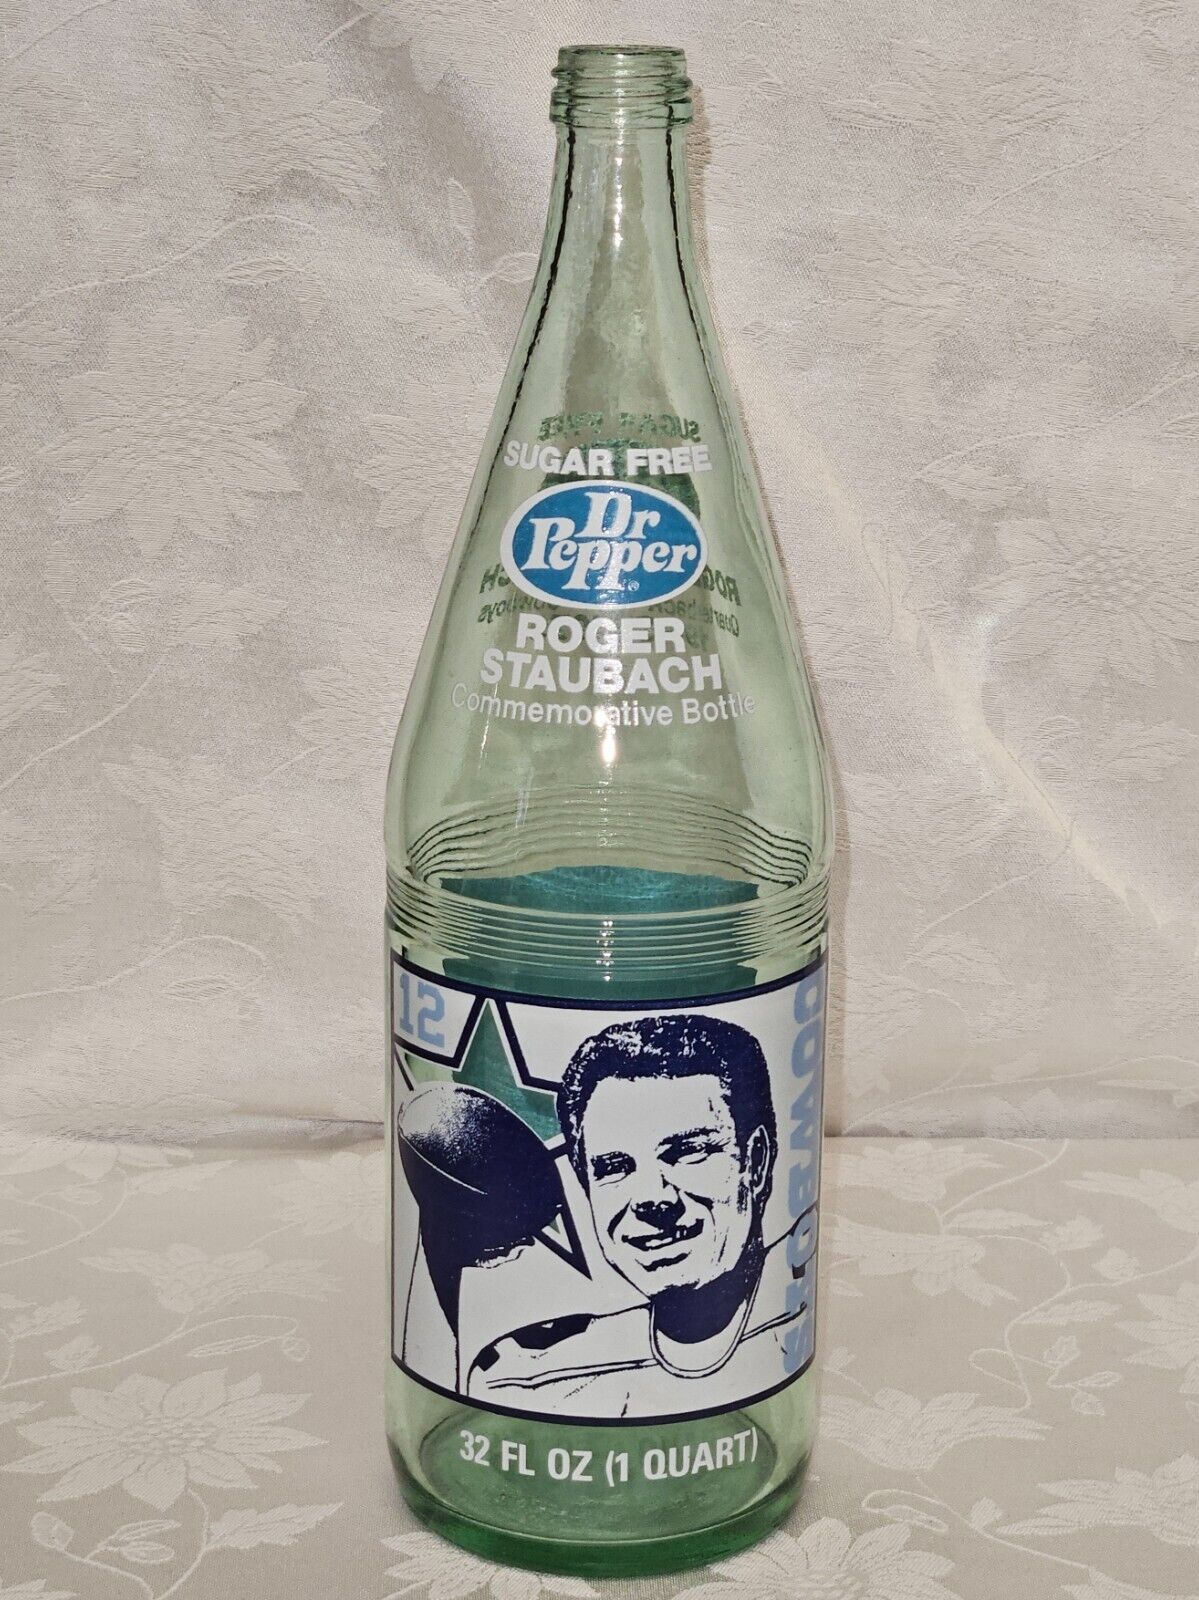 1979 Roger Staubach Dr Pepper bottle.  32 oz (1 Quart)